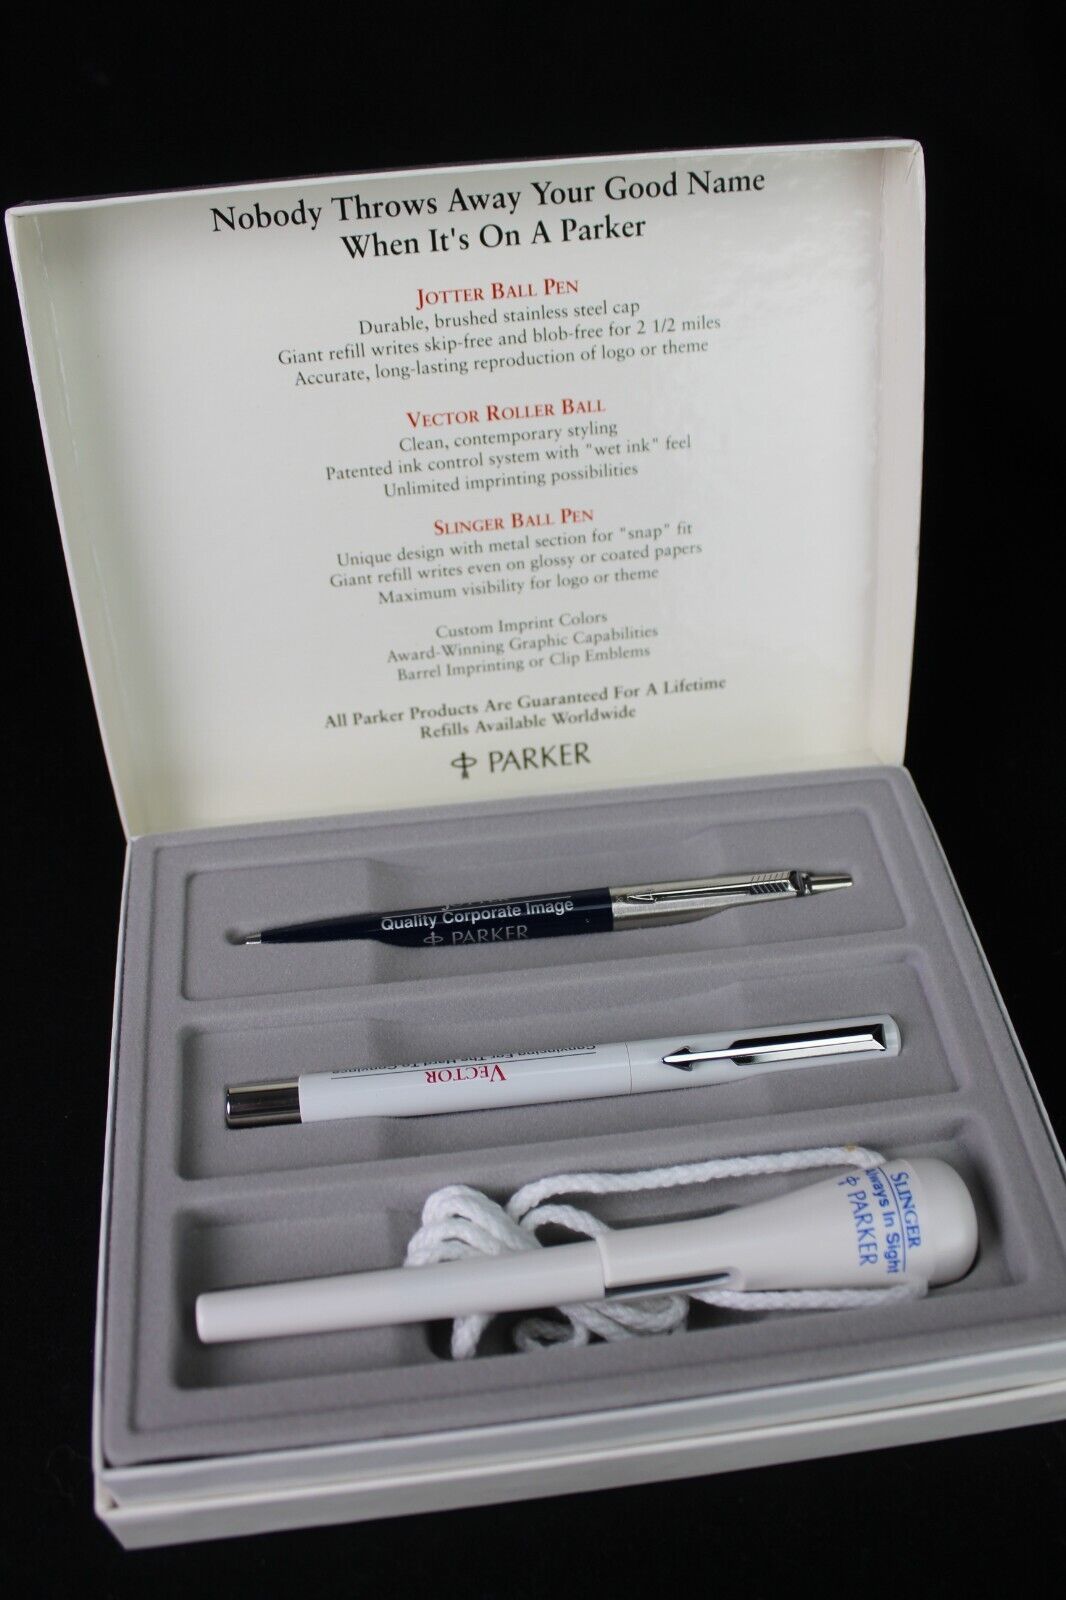 Vintage Parker pen PROMOTIONAL SALESMANS SAMPLE advertisement box 1990's RARE! - $119.99